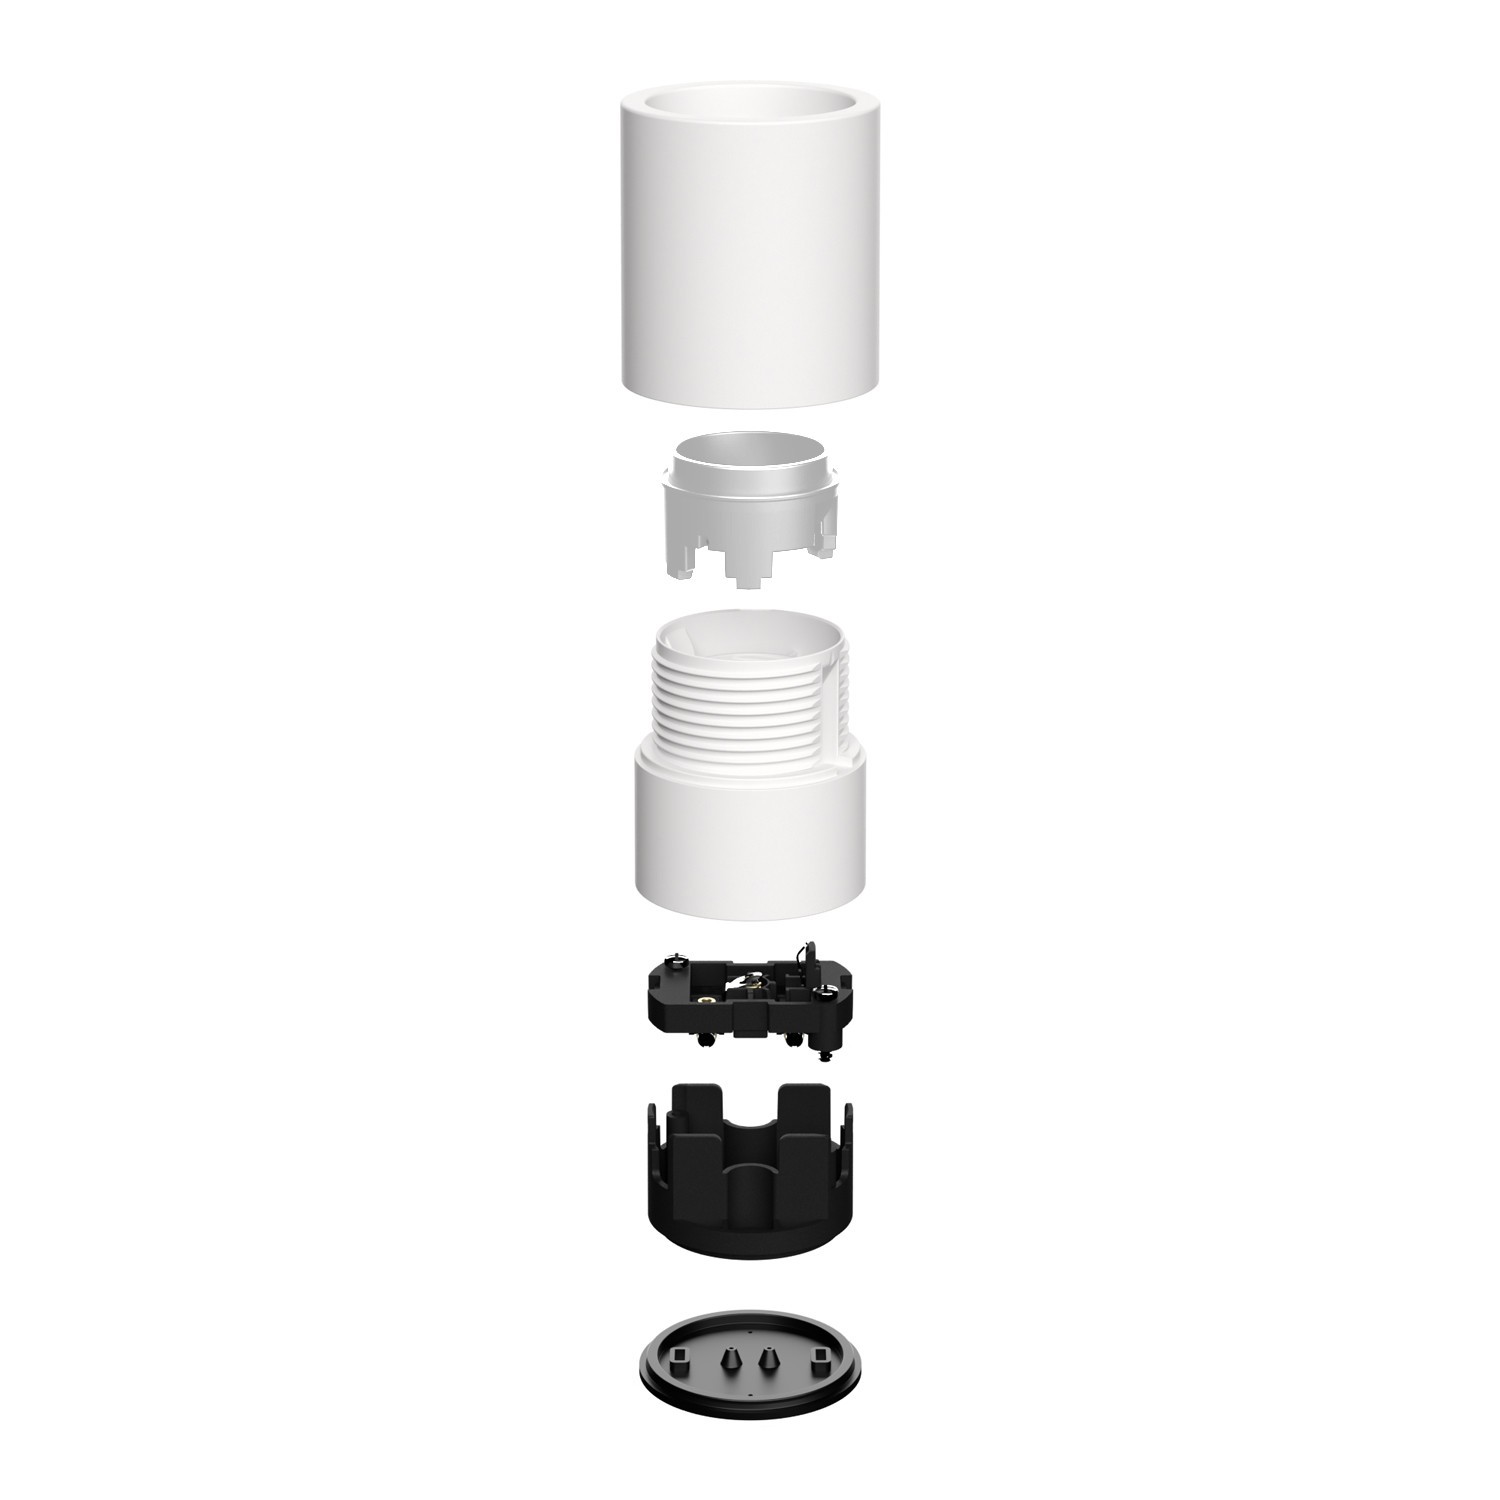 Vägg- eller taklamphållare E27 - Vattentät IP44